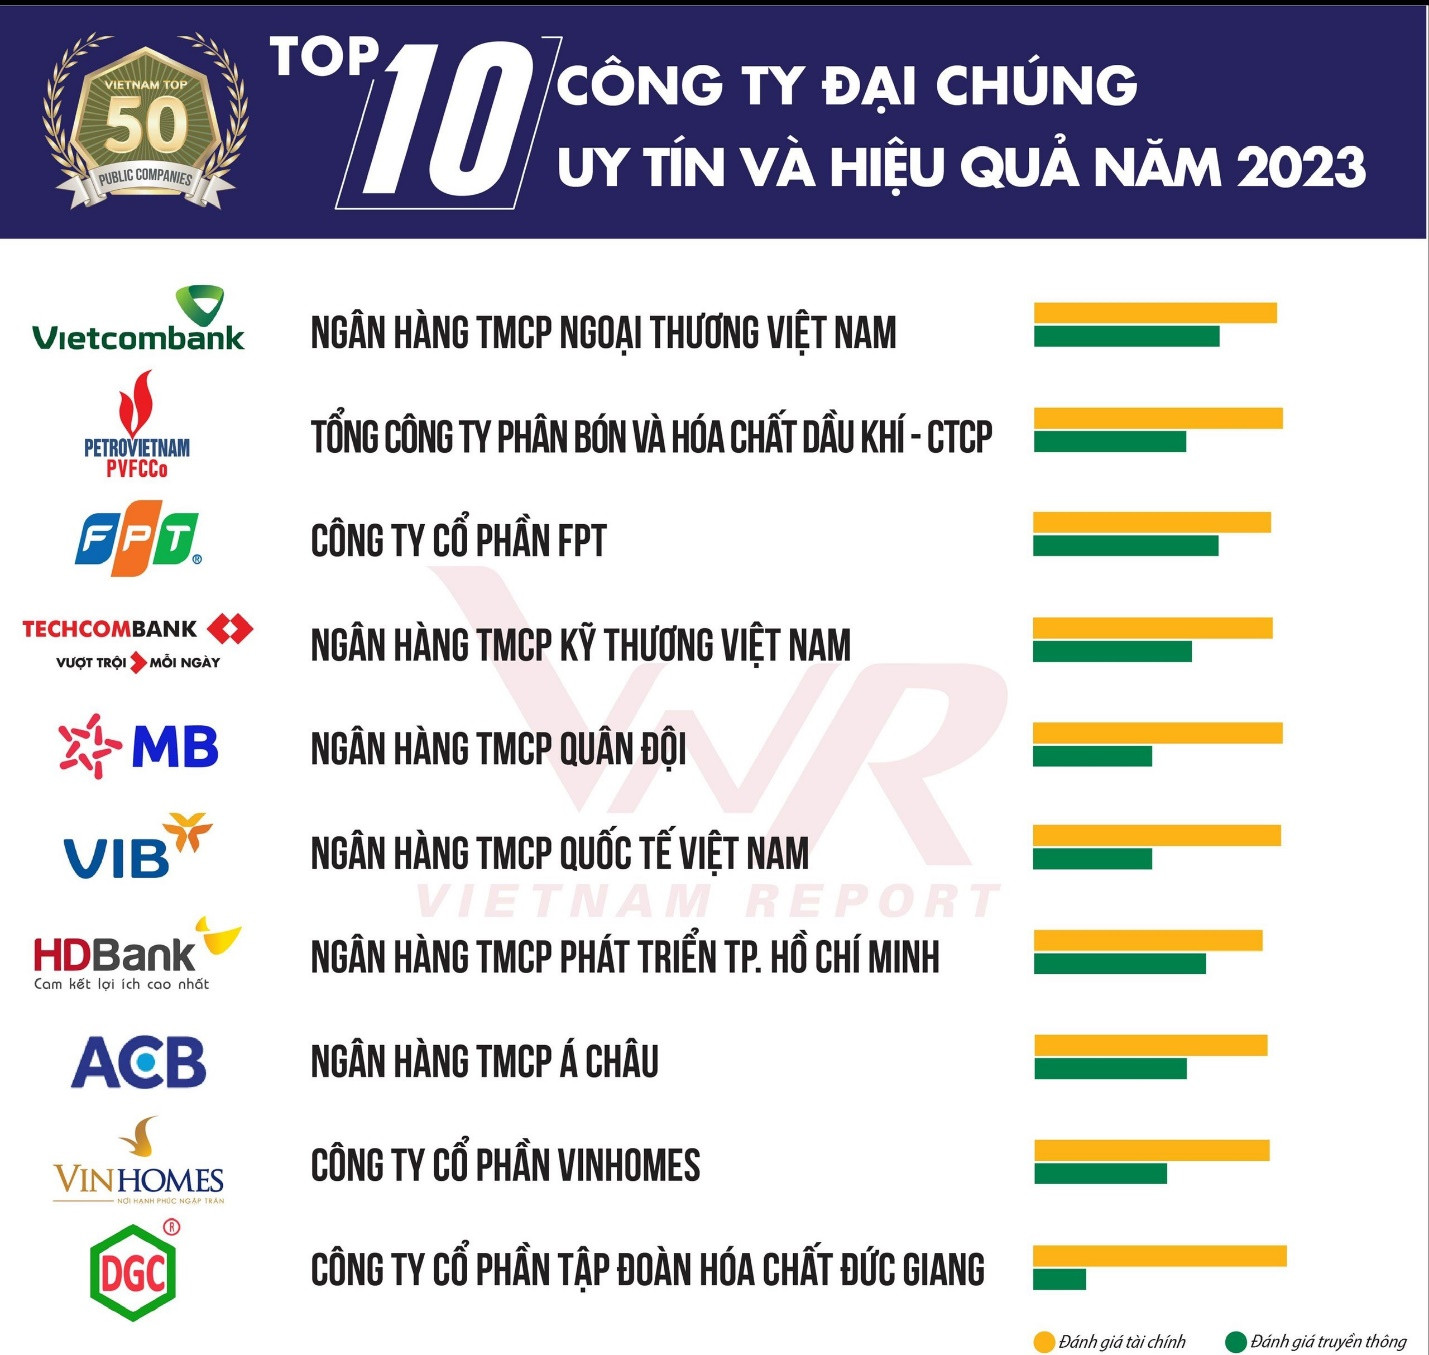 6 ngân hàng lọt Top 10 các Công ty Đại chúng uy tín và hiệu quả năm 2023 - Ảnh 1.